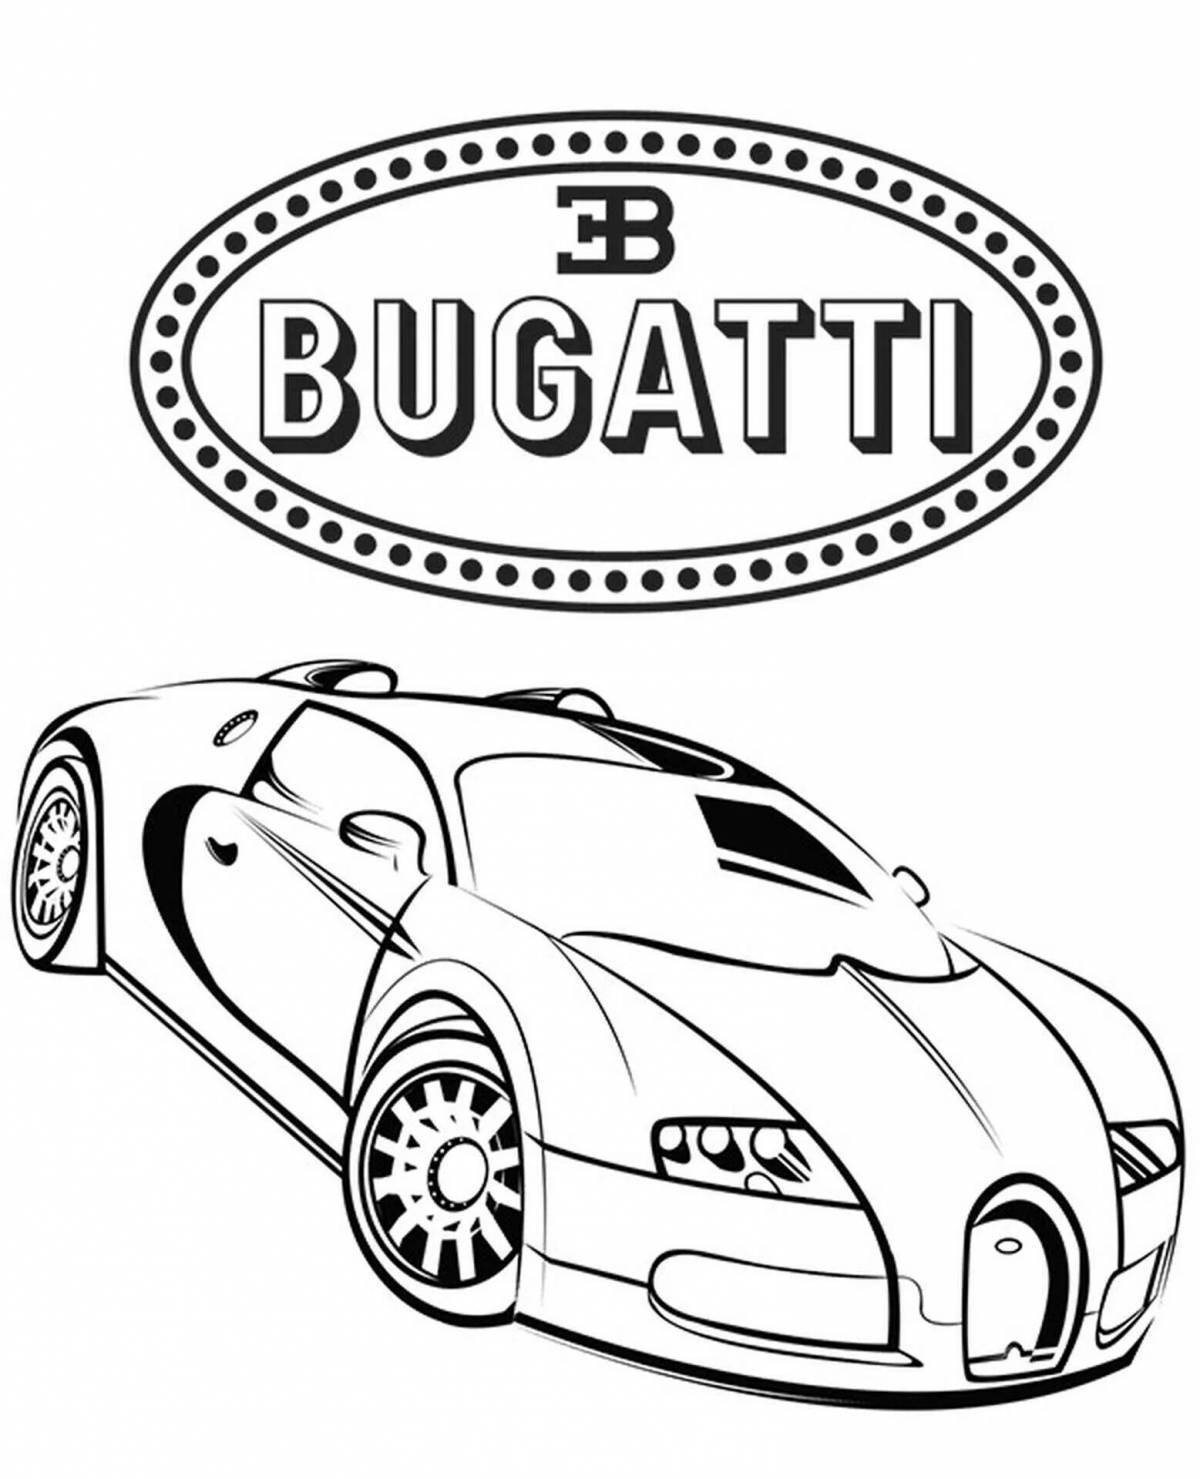 Bugatti car coloring page for kids